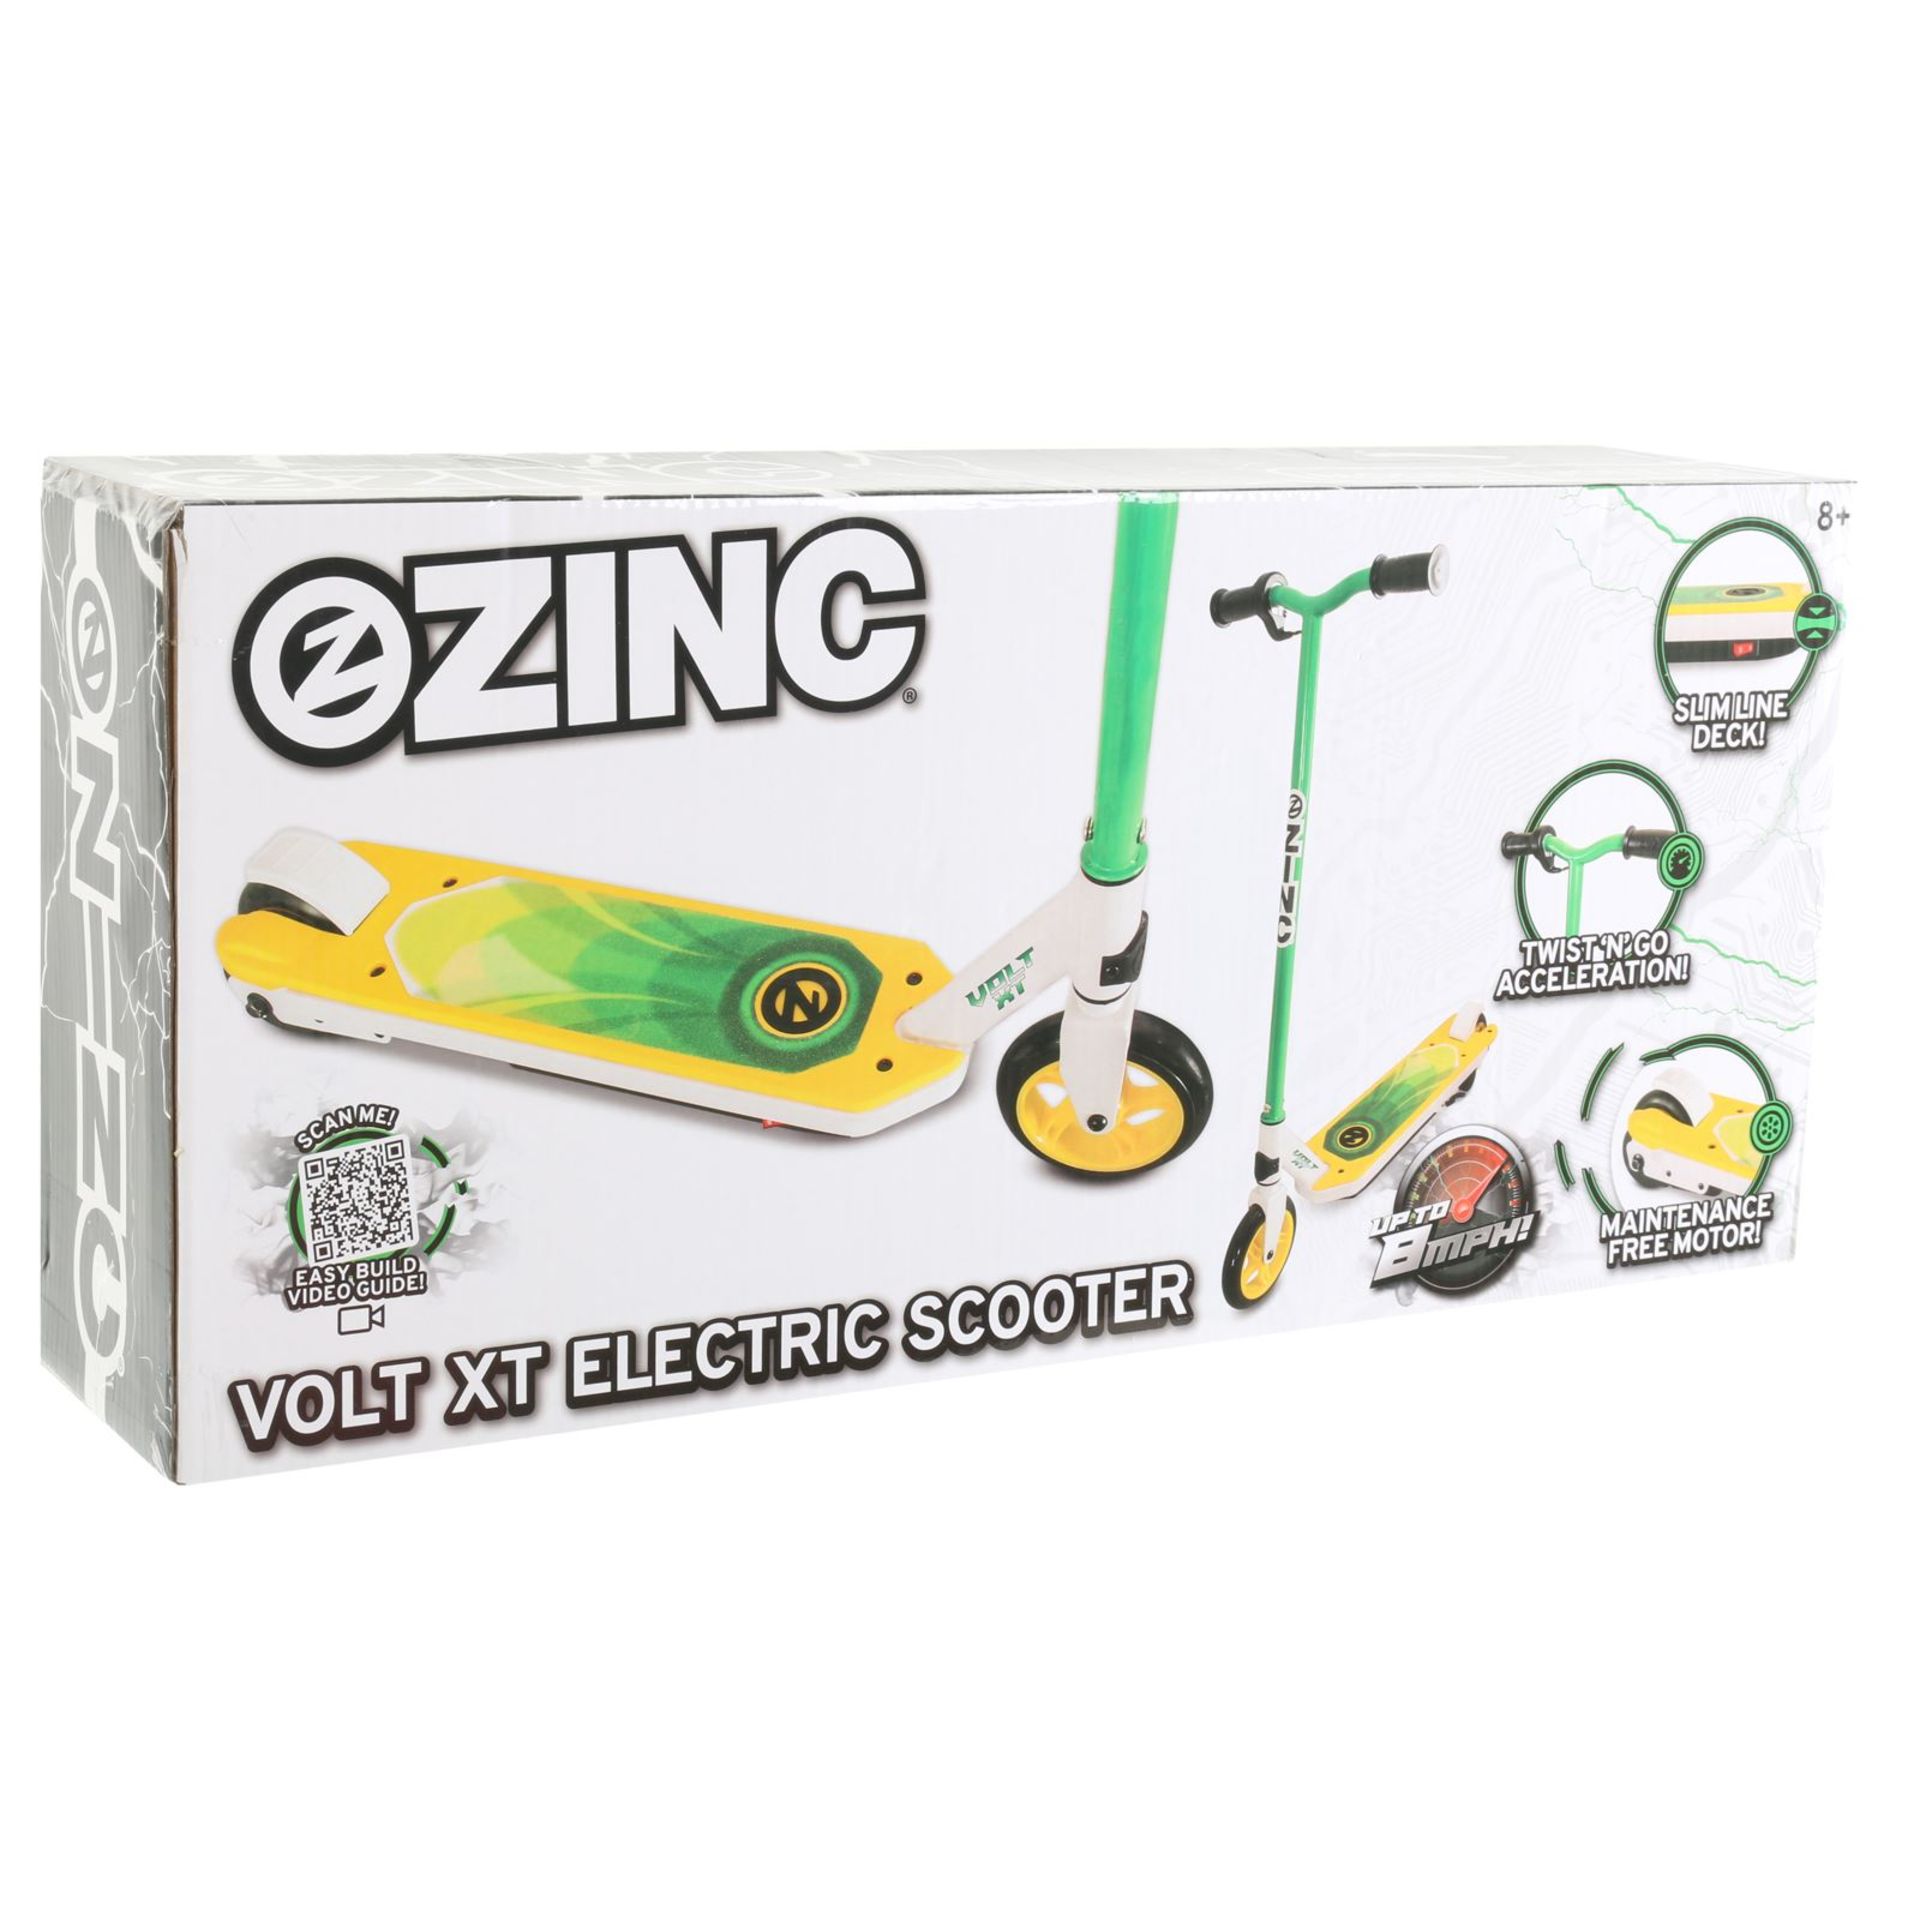 V Brand New Zinc Electric Scooter Volt Xt - eBay Price £91.69